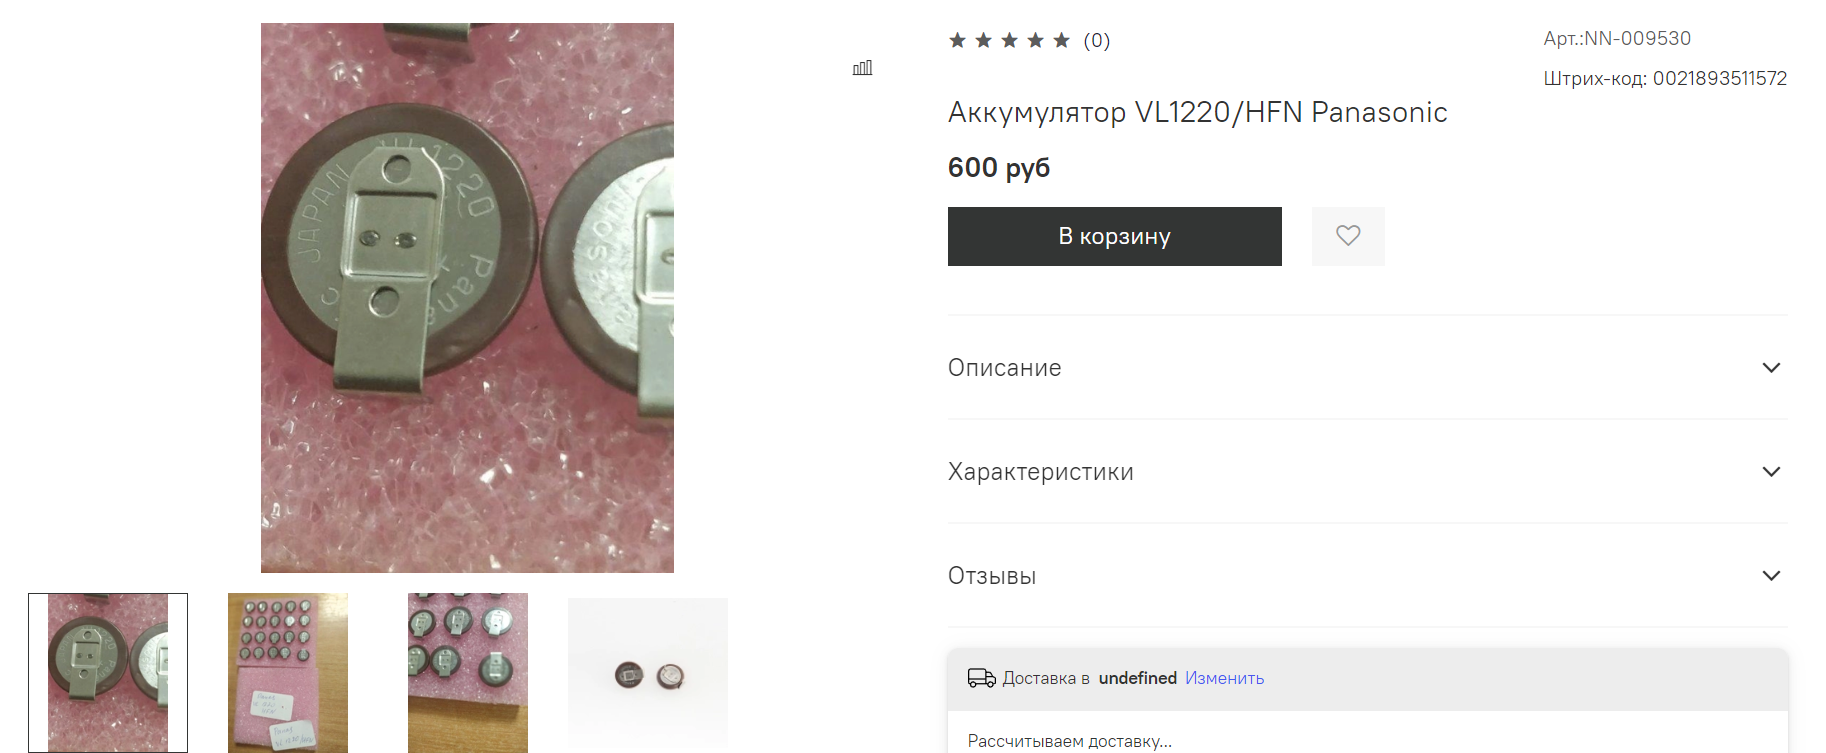 В России устроили истерику из-за "маячков" на машинах оккупантов: они оказались обычными батарейками